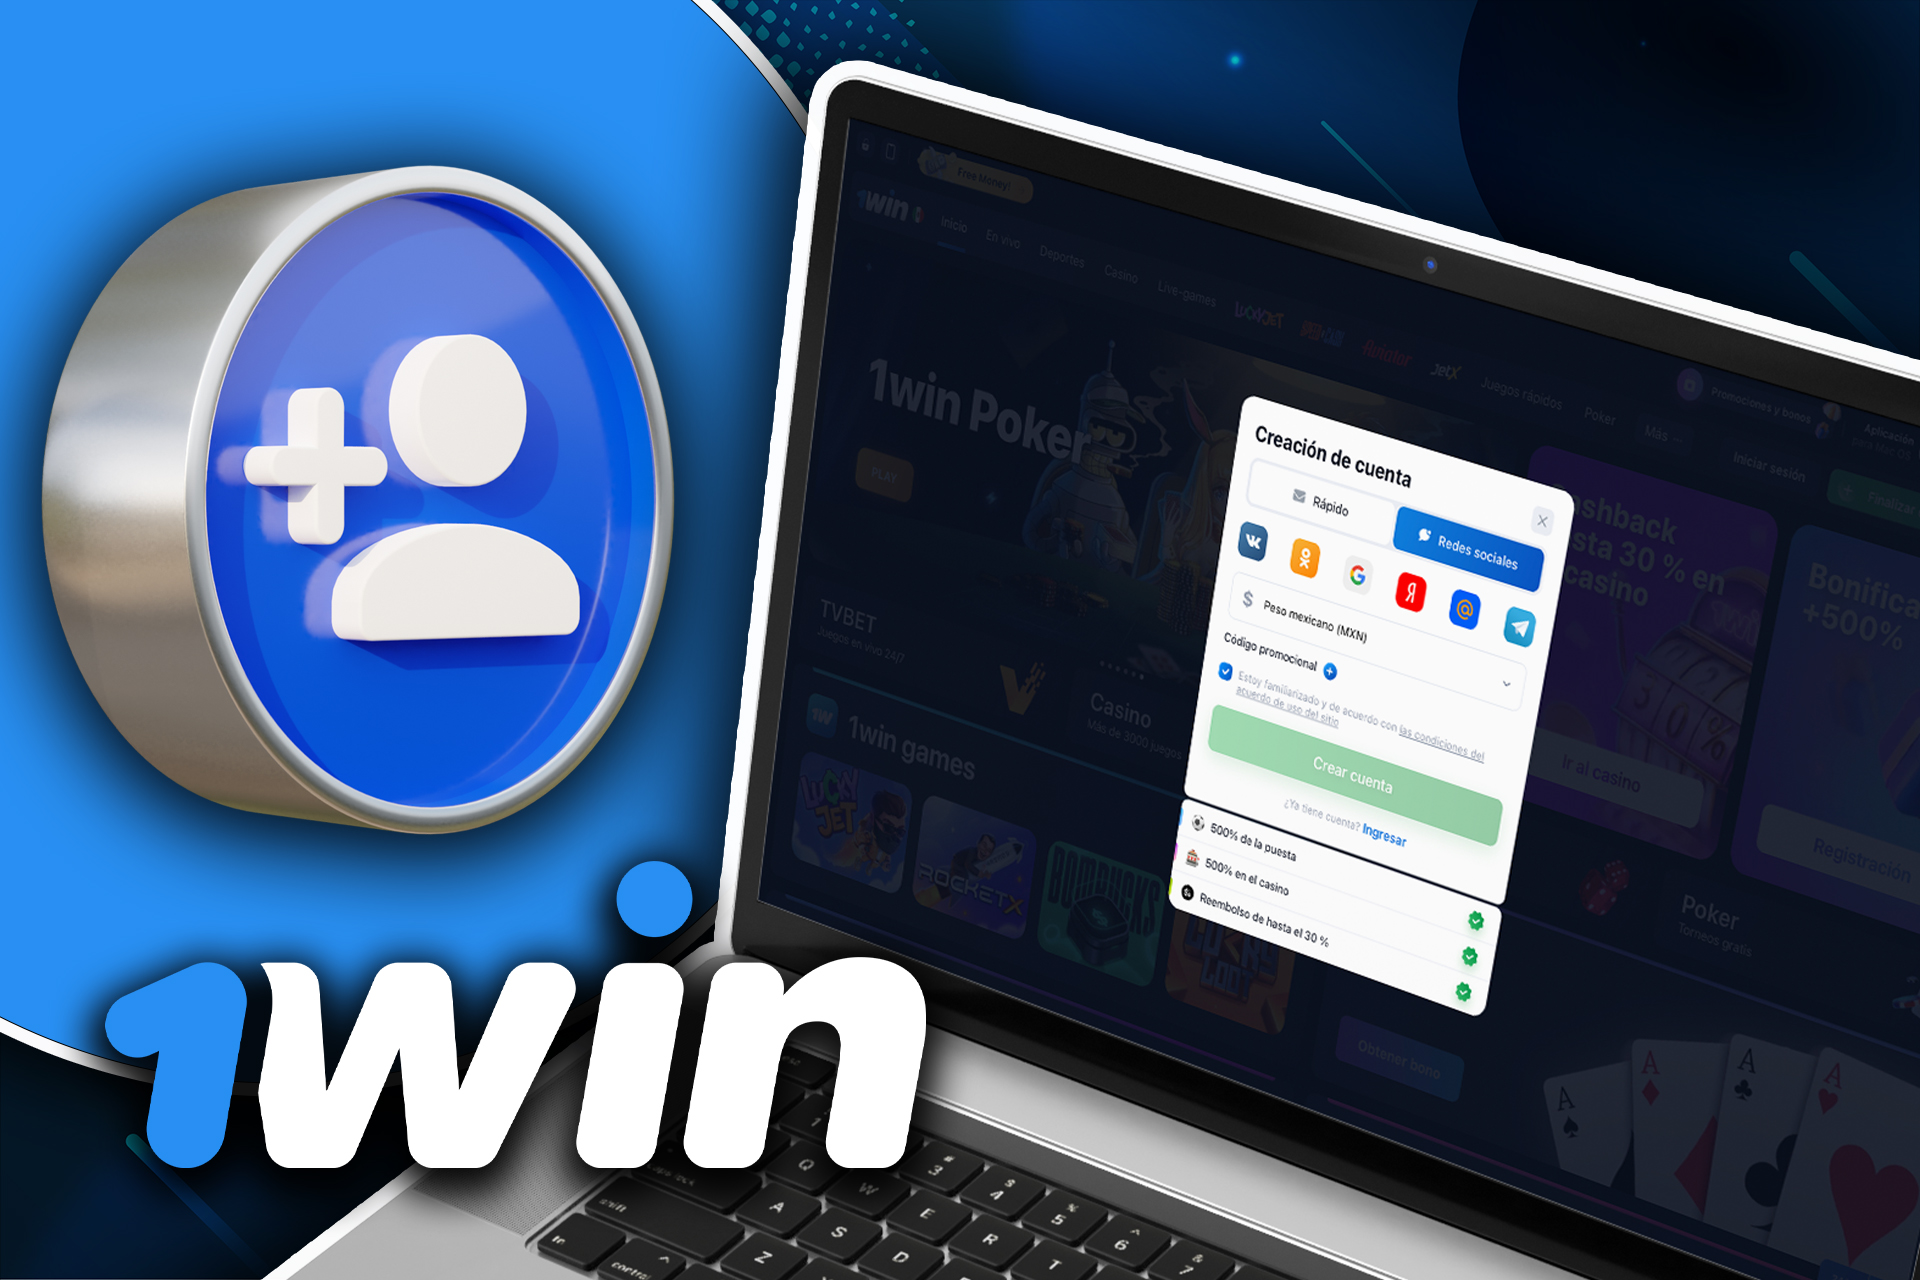 Puedes registrarte en 1win a través de tu cuenta de redes sociales.